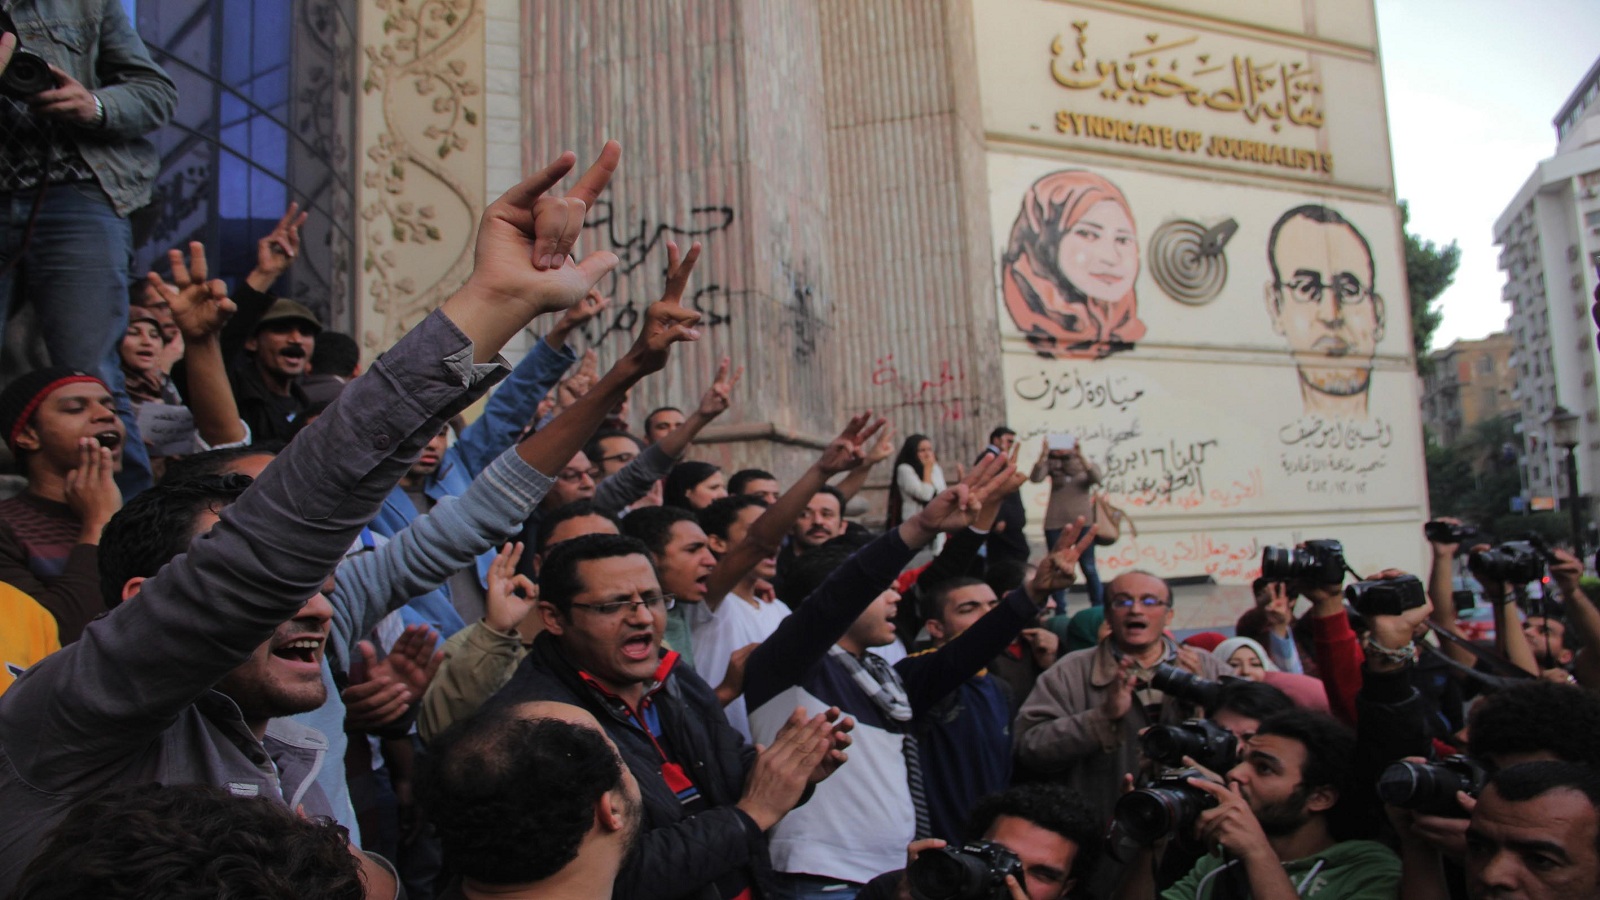 مصر تحجب 3 مواقع إخبارية جديدة